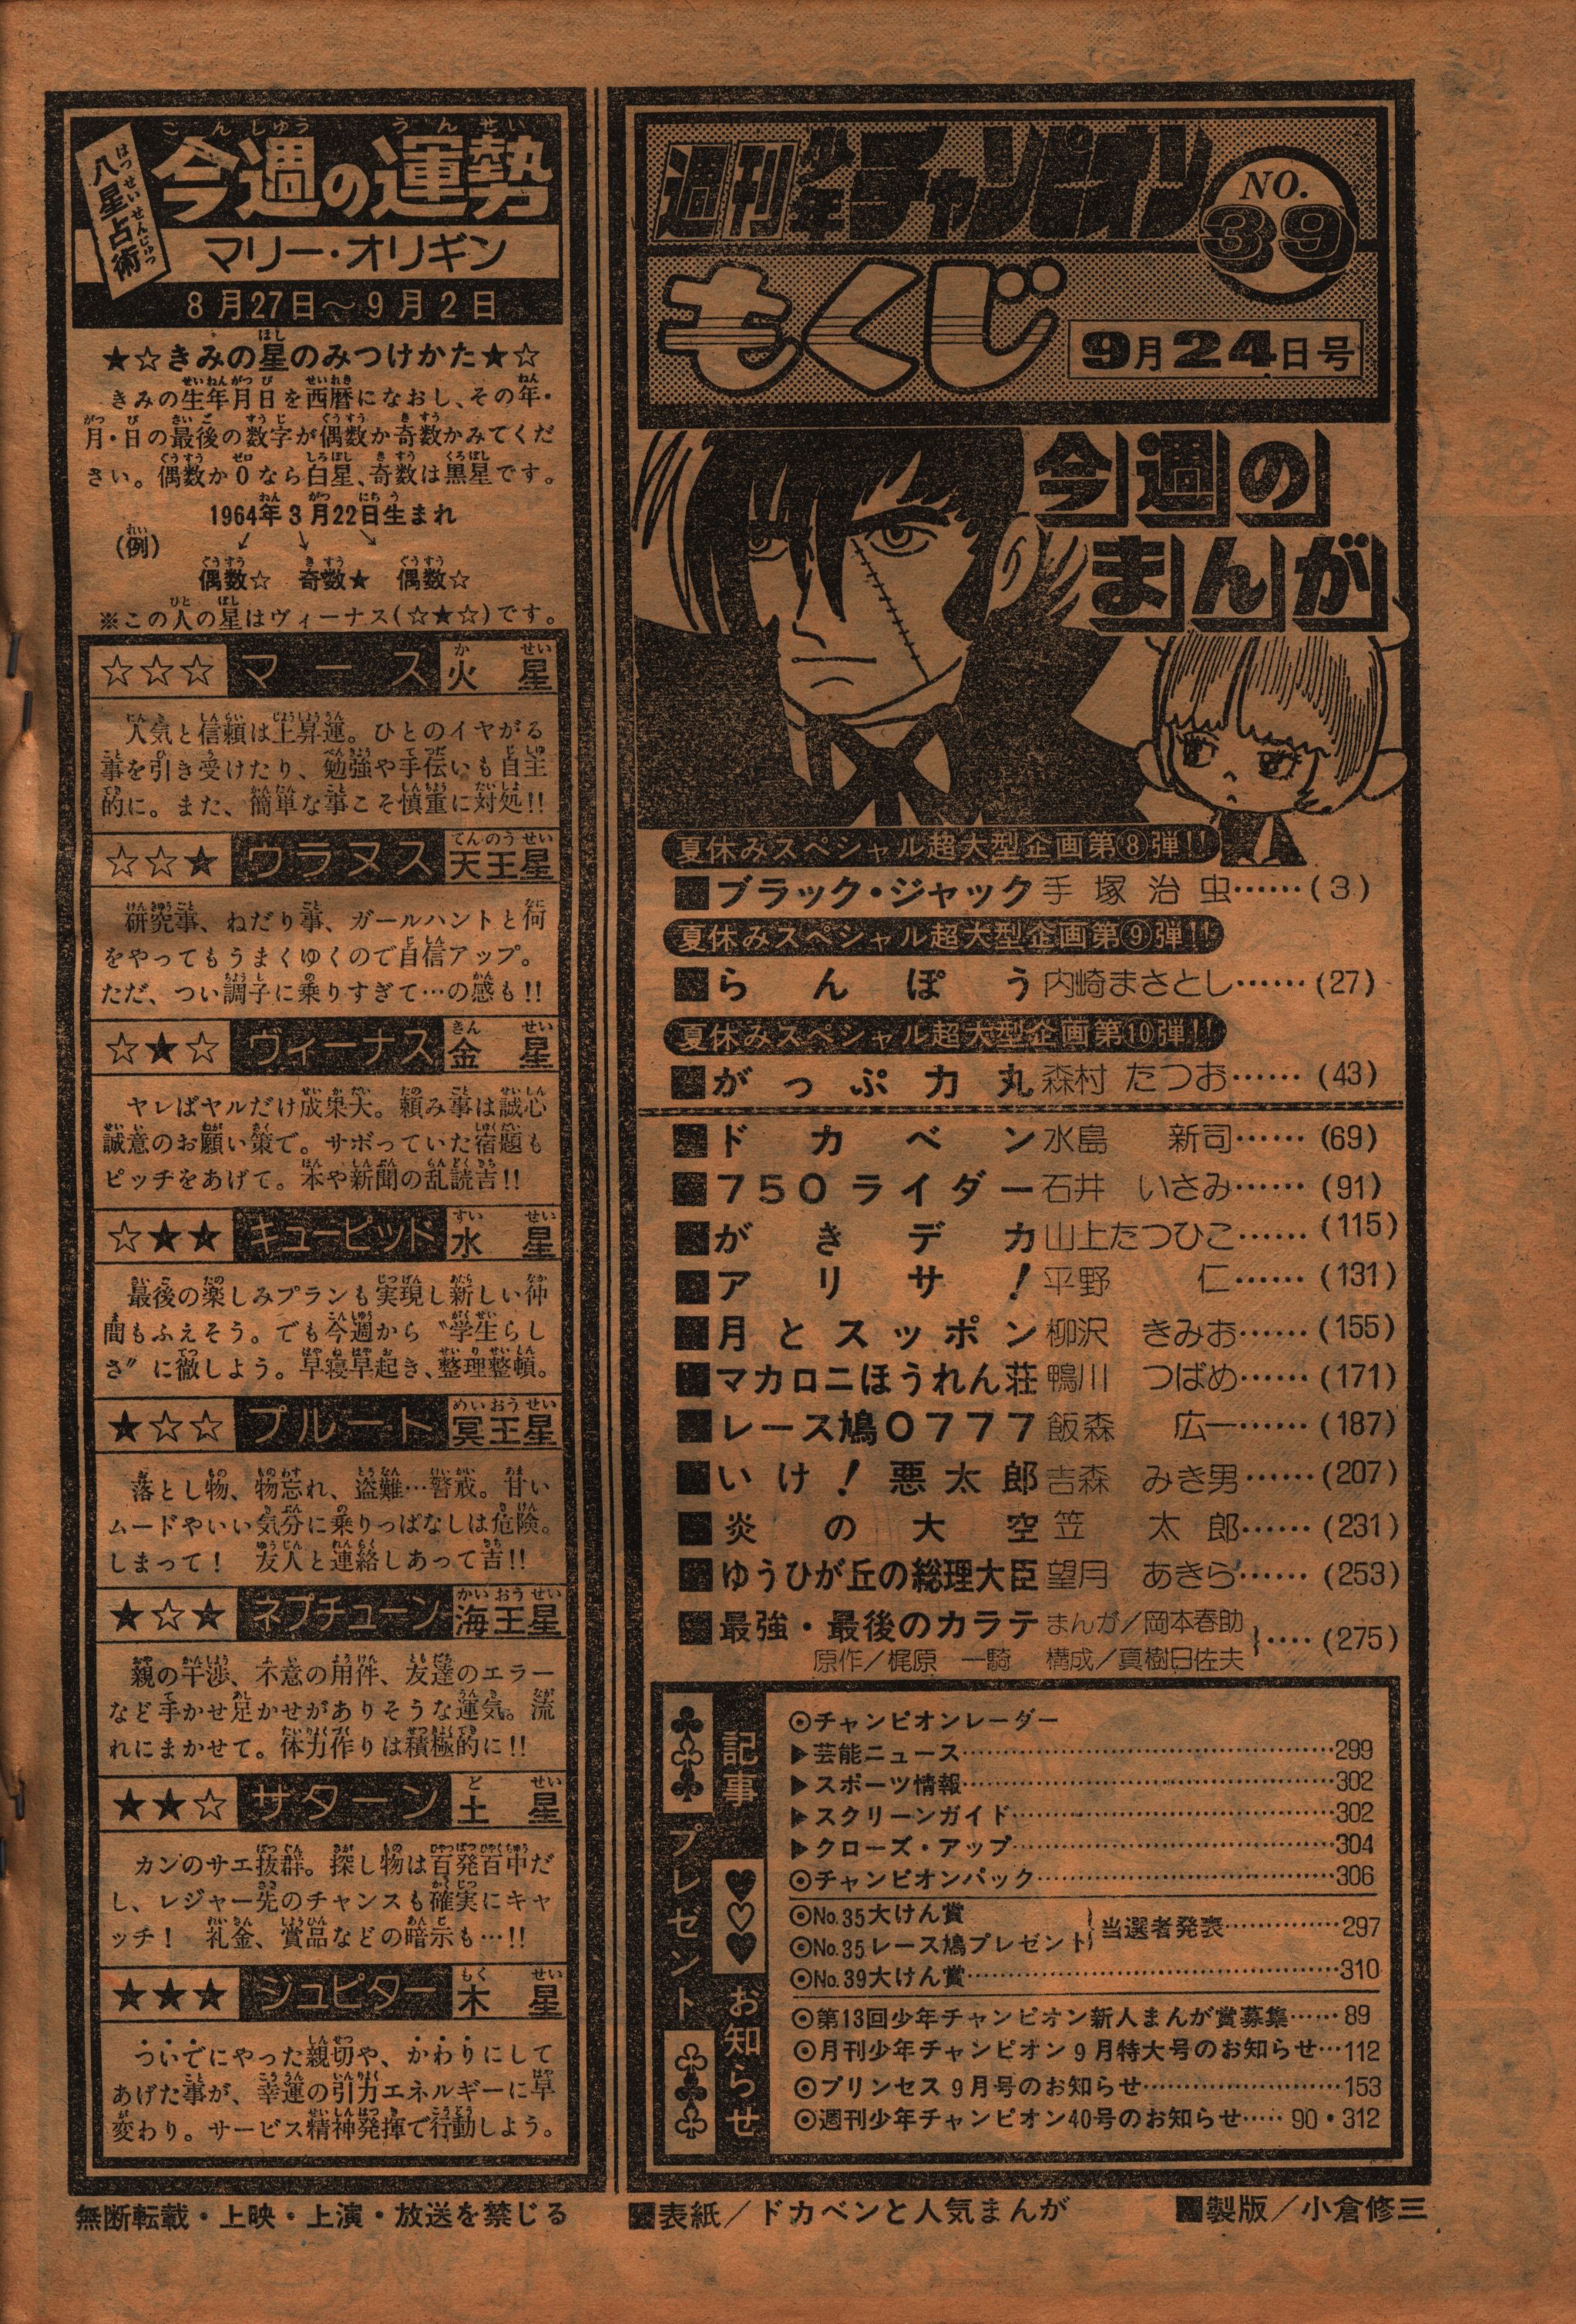 Akita Shoten Weekly Shonen Champion 1979 (Showa 54) 39 7939 Tsubame  Kamogawa 